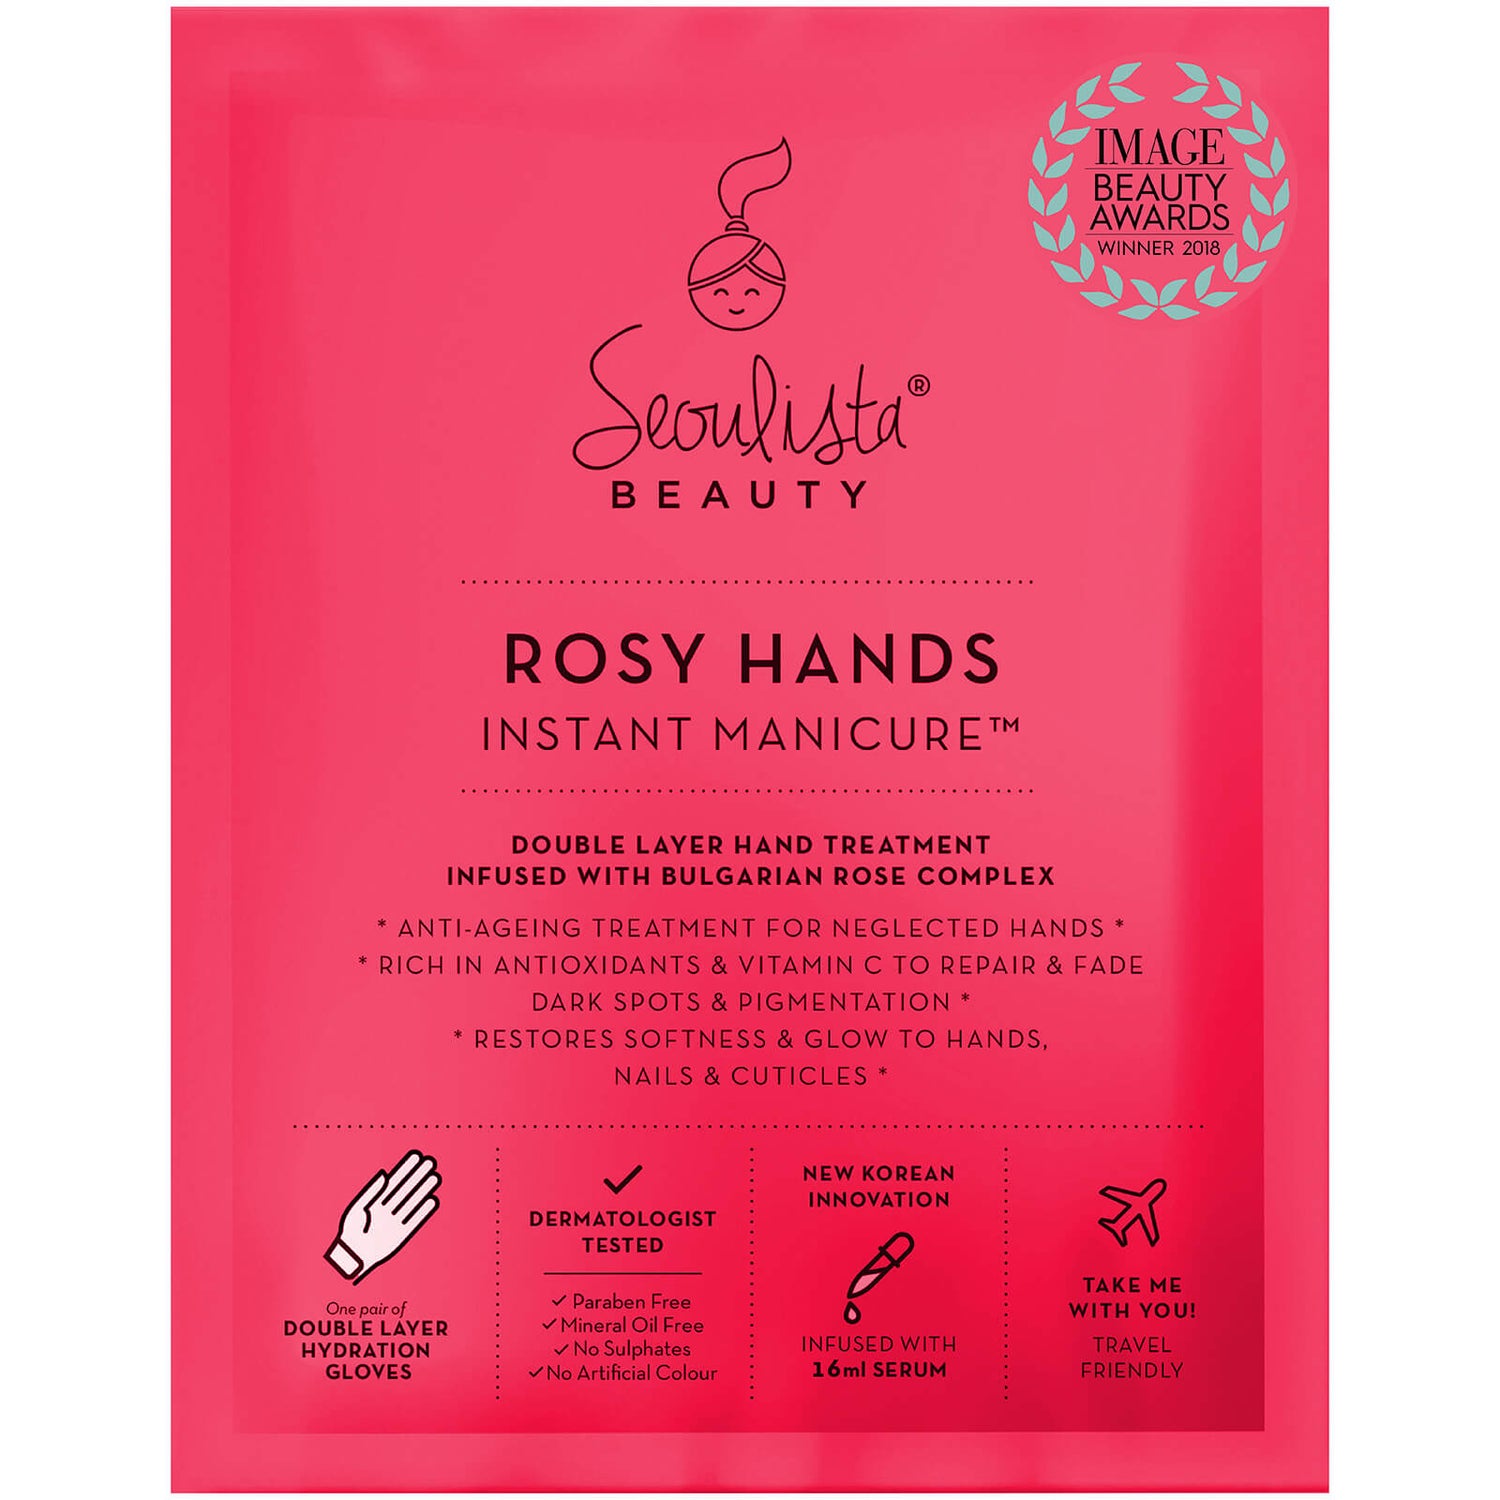 Masque pour les Mains Rosy Hands Instant Manicure™ Seoulista BEAUTY